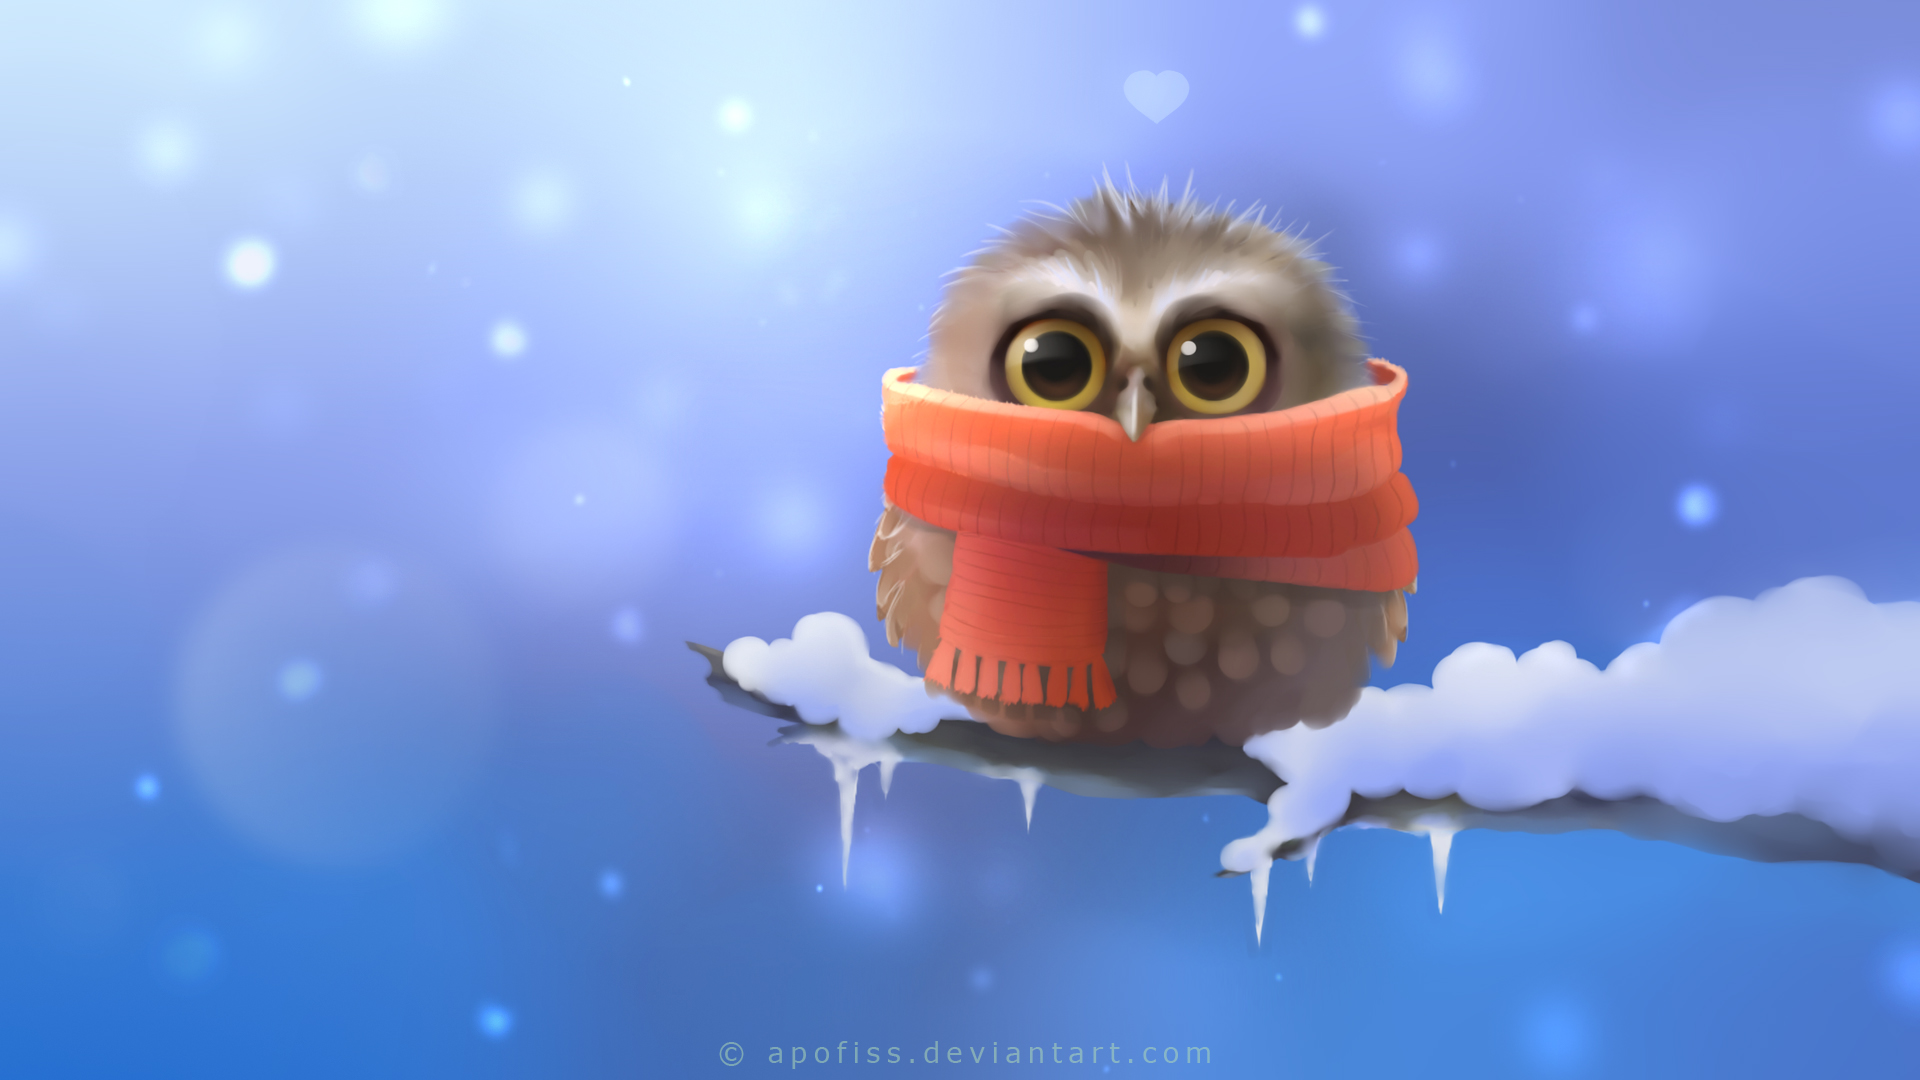 Cute Owl, HD Artist, 4k Wallpapers